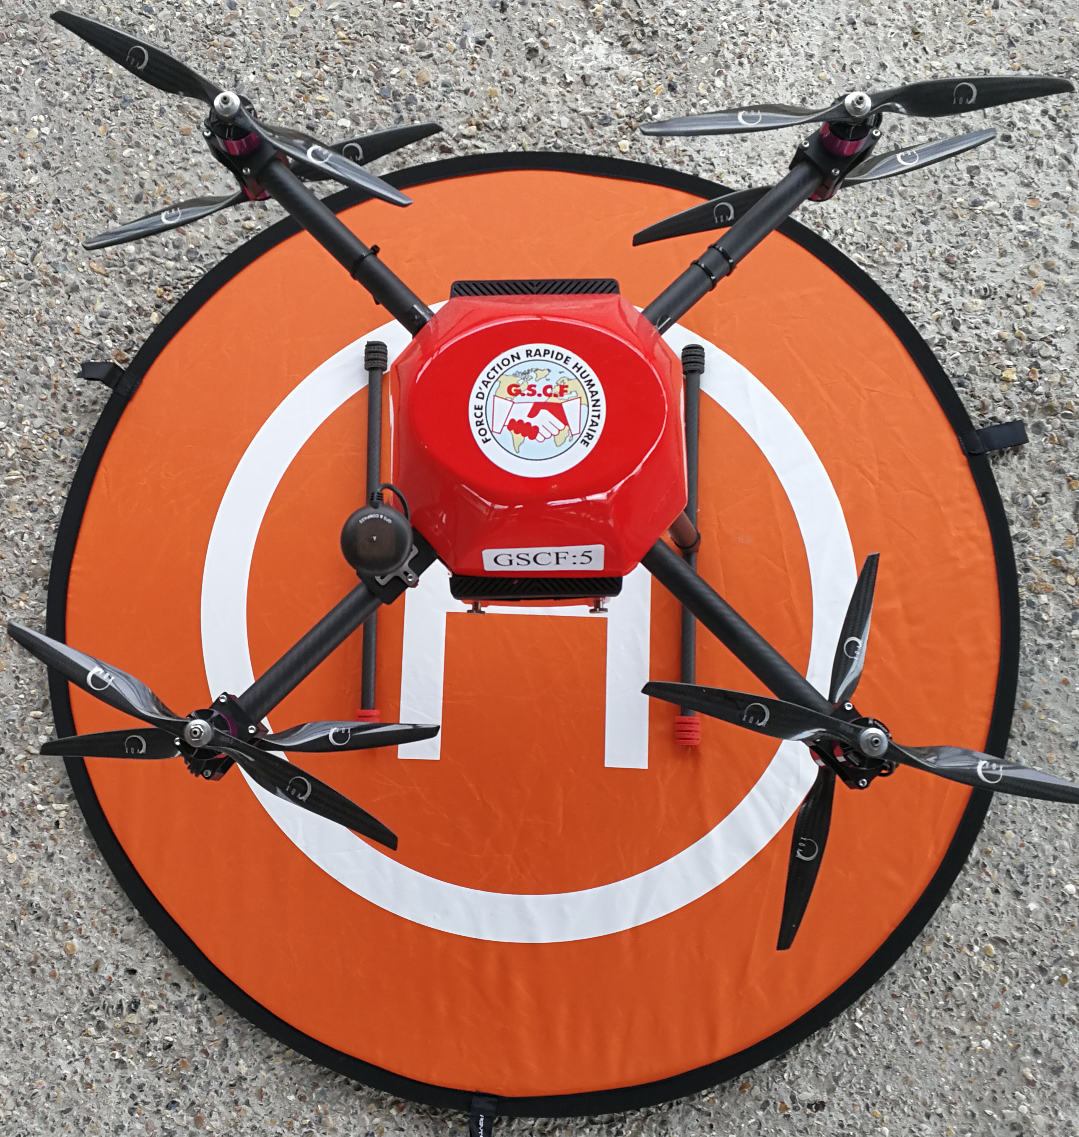 Parmi la flotte de 5 drones du GSCF, deux sont des OctoPush.